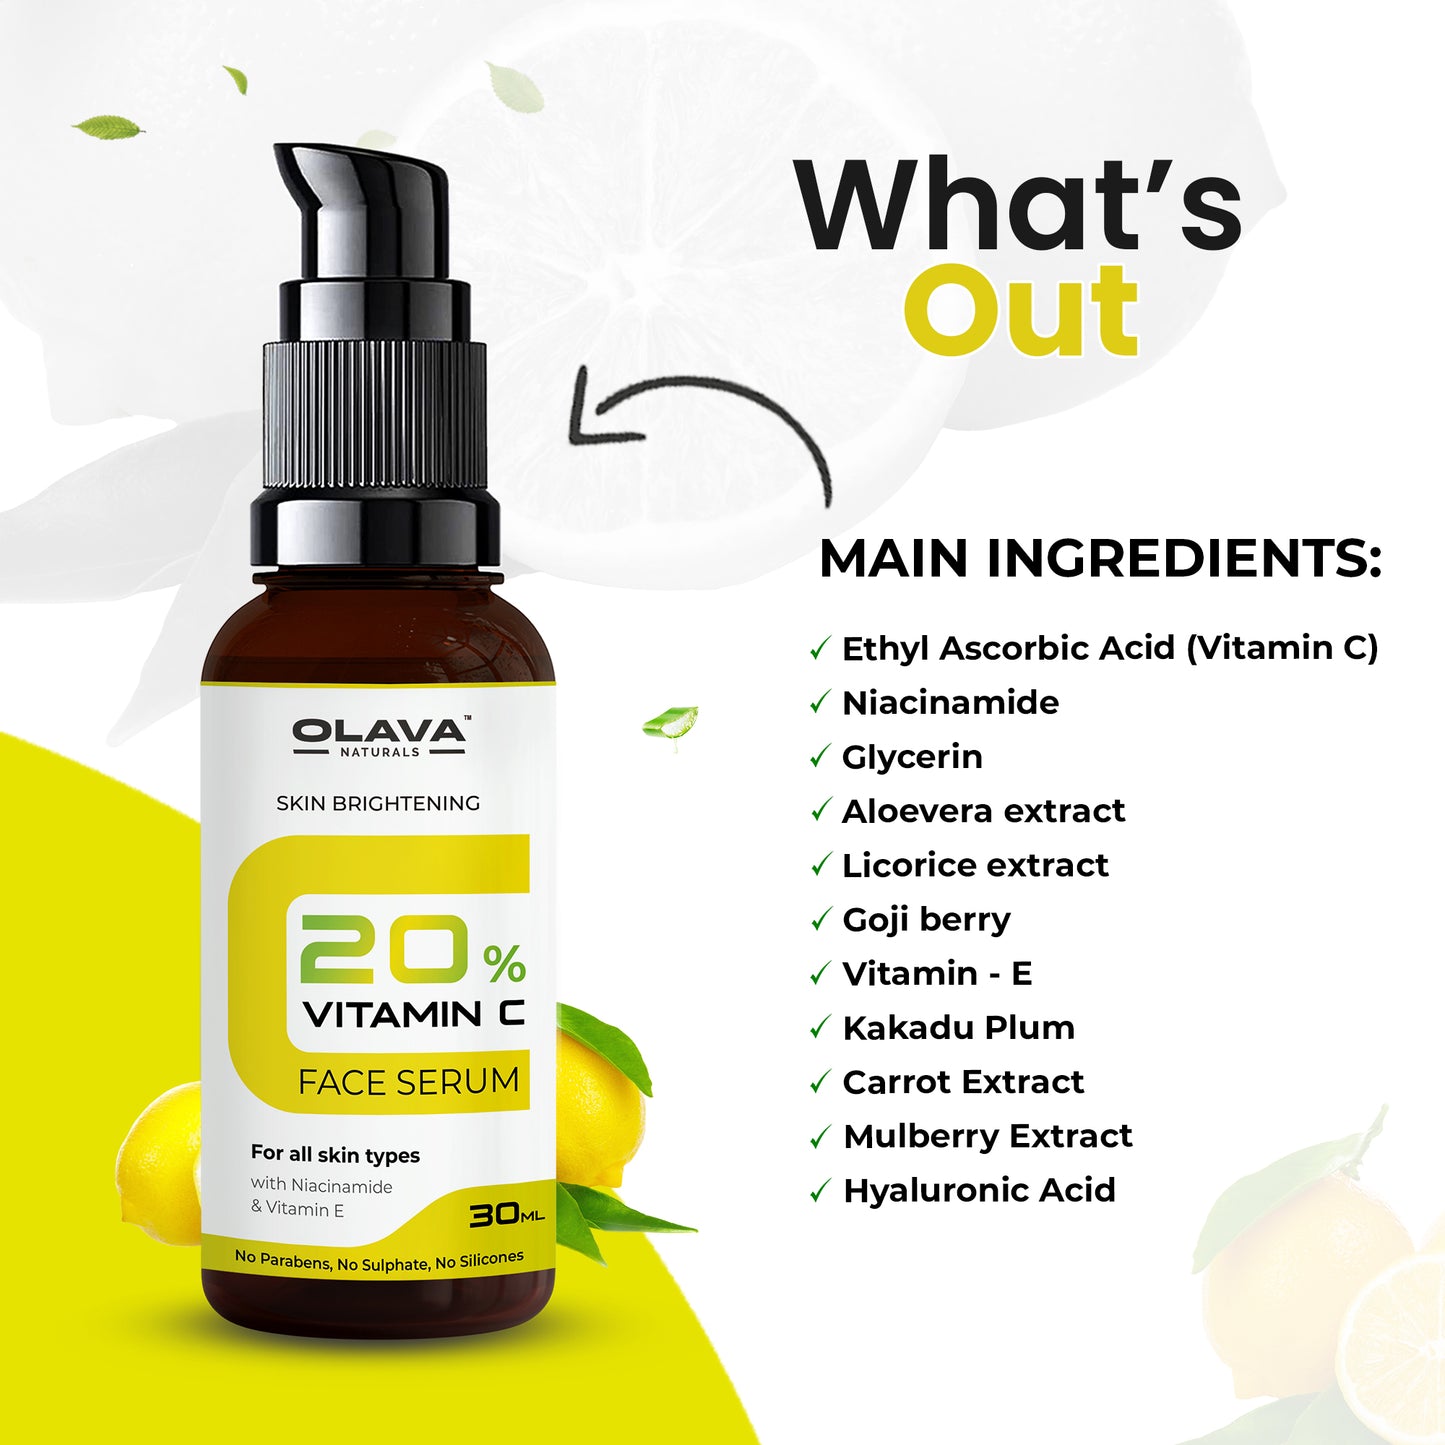 Olava Naturals Vitamin C Serum - 20% Vitamin C Face Serum - Skin Brightening Vit C Serum for Men & Women - Non Irritating - 30ml